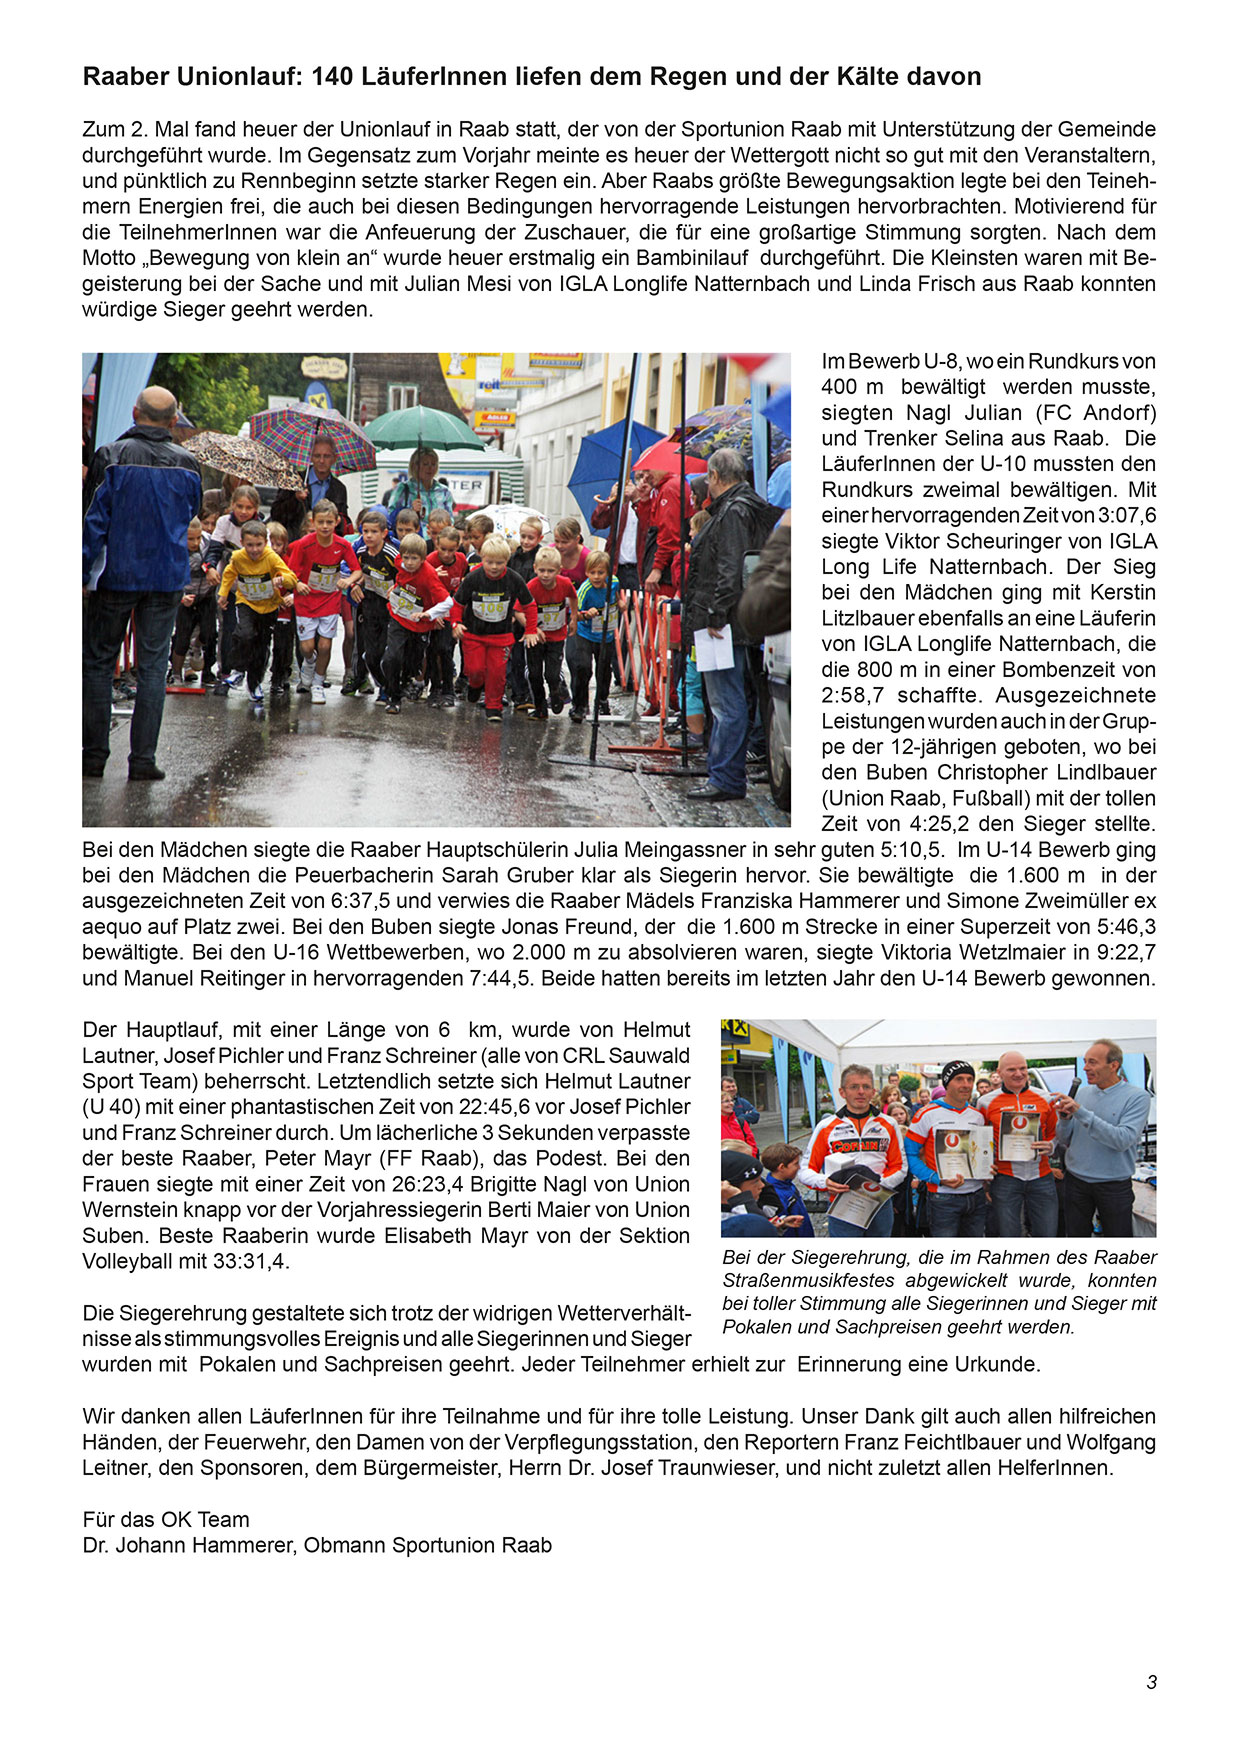 Unionzeitung 2012 - Seite 03